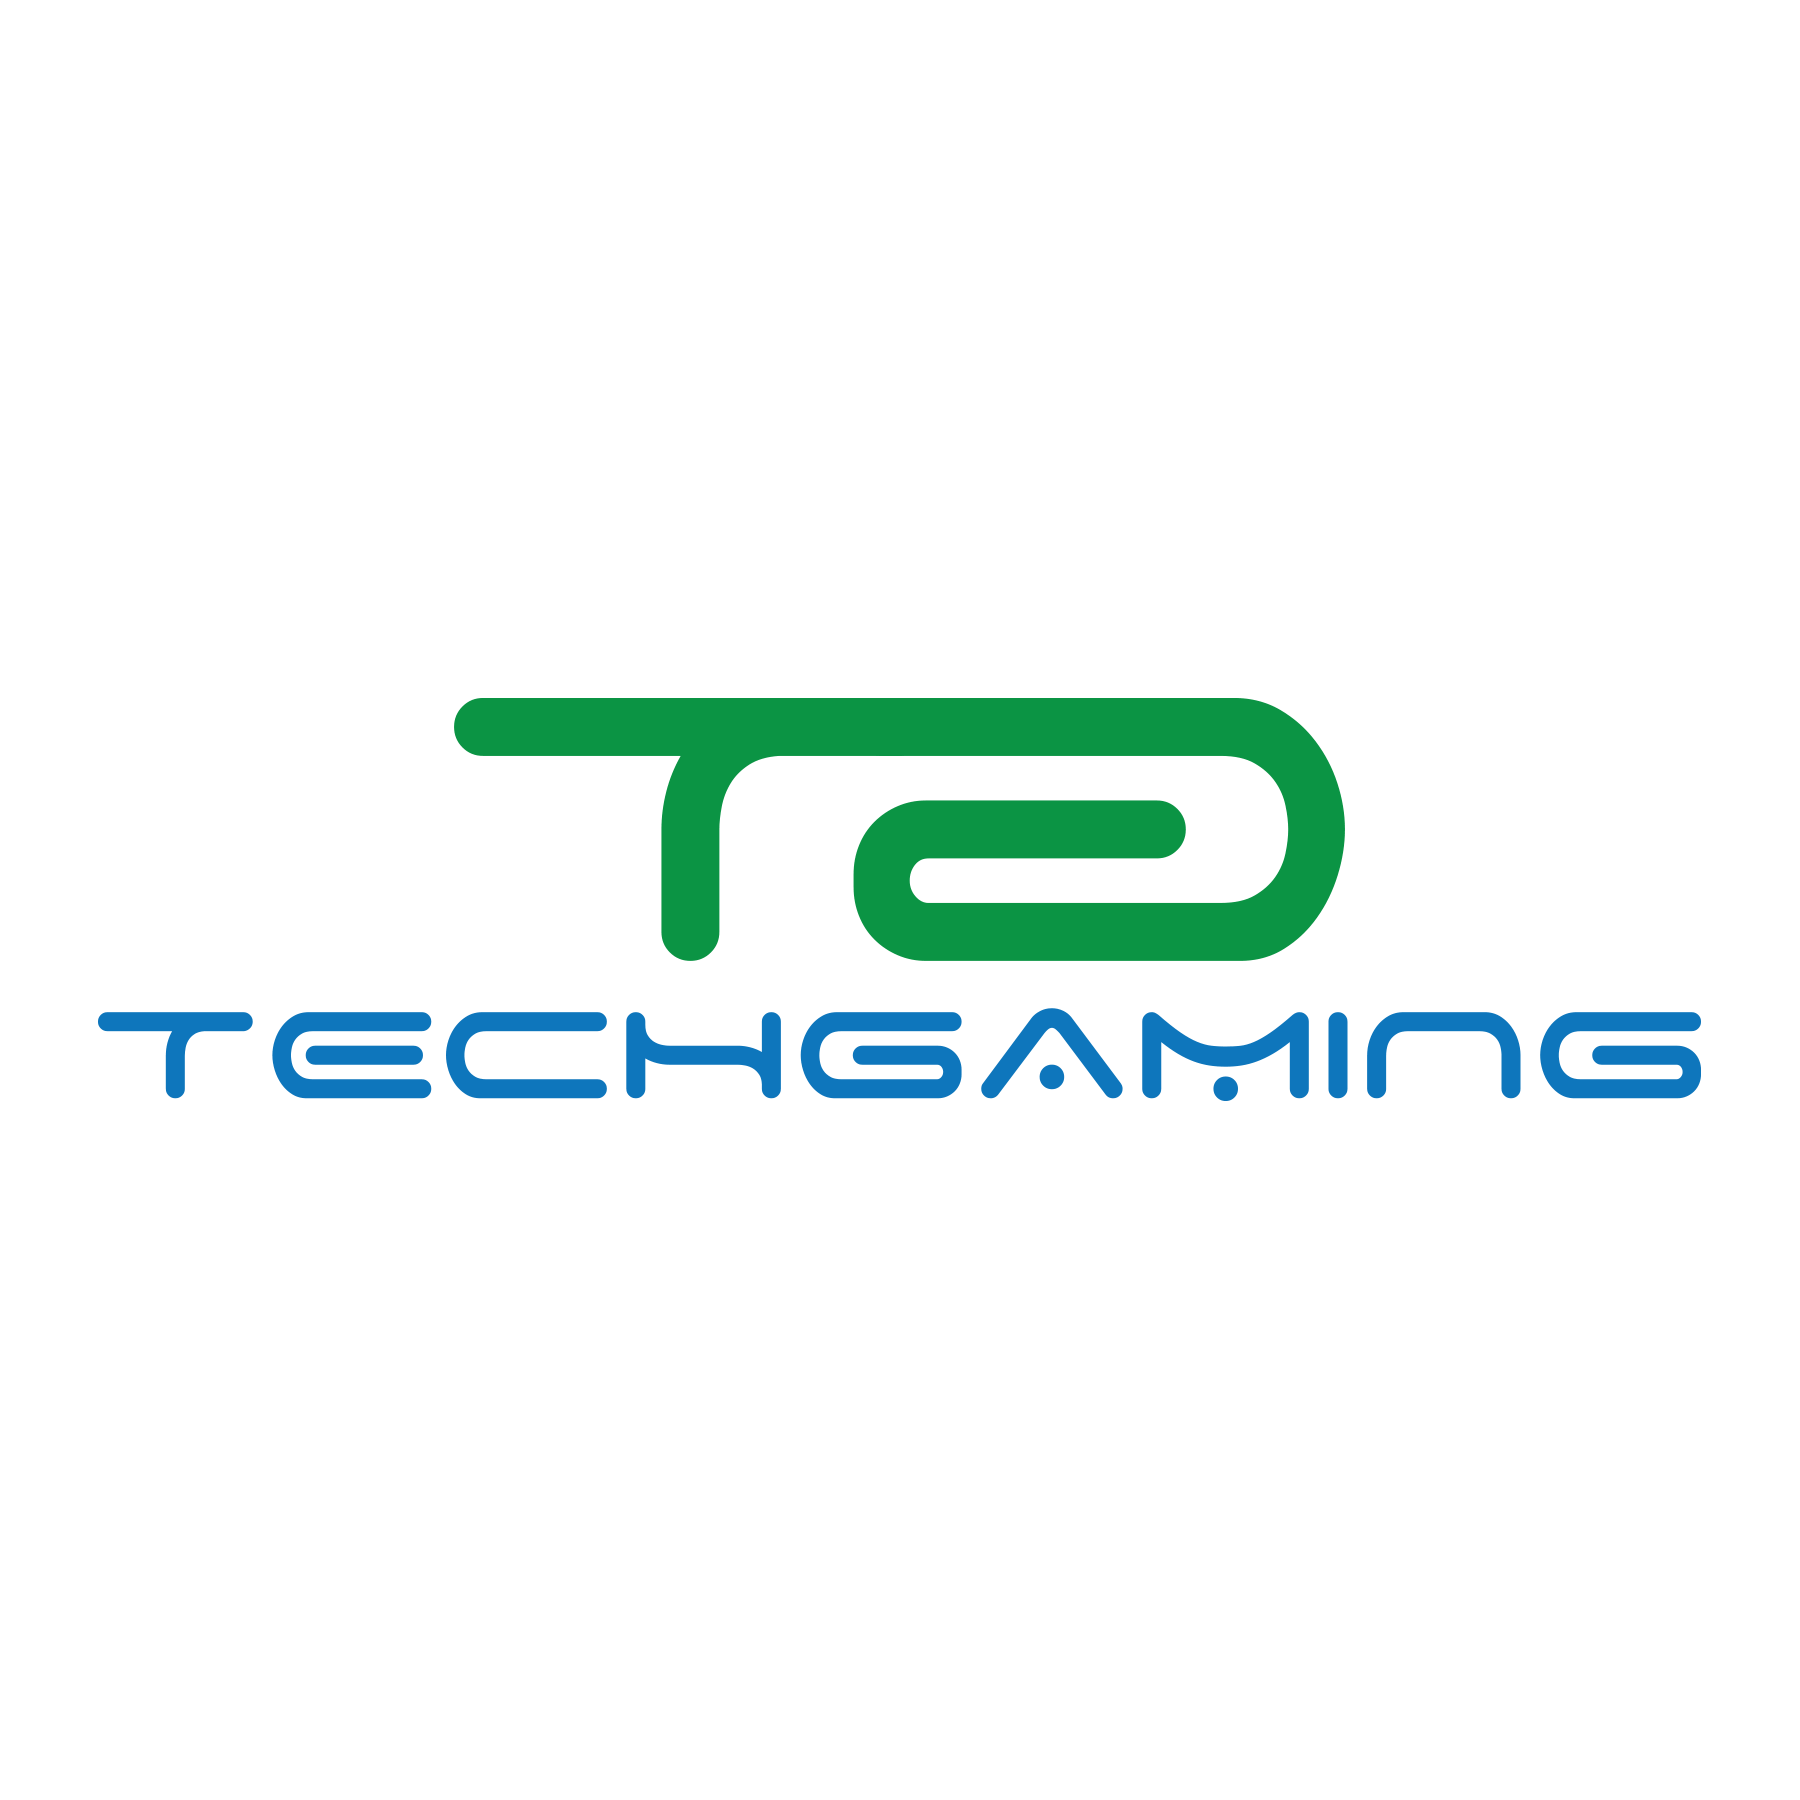 TechGaming Logo